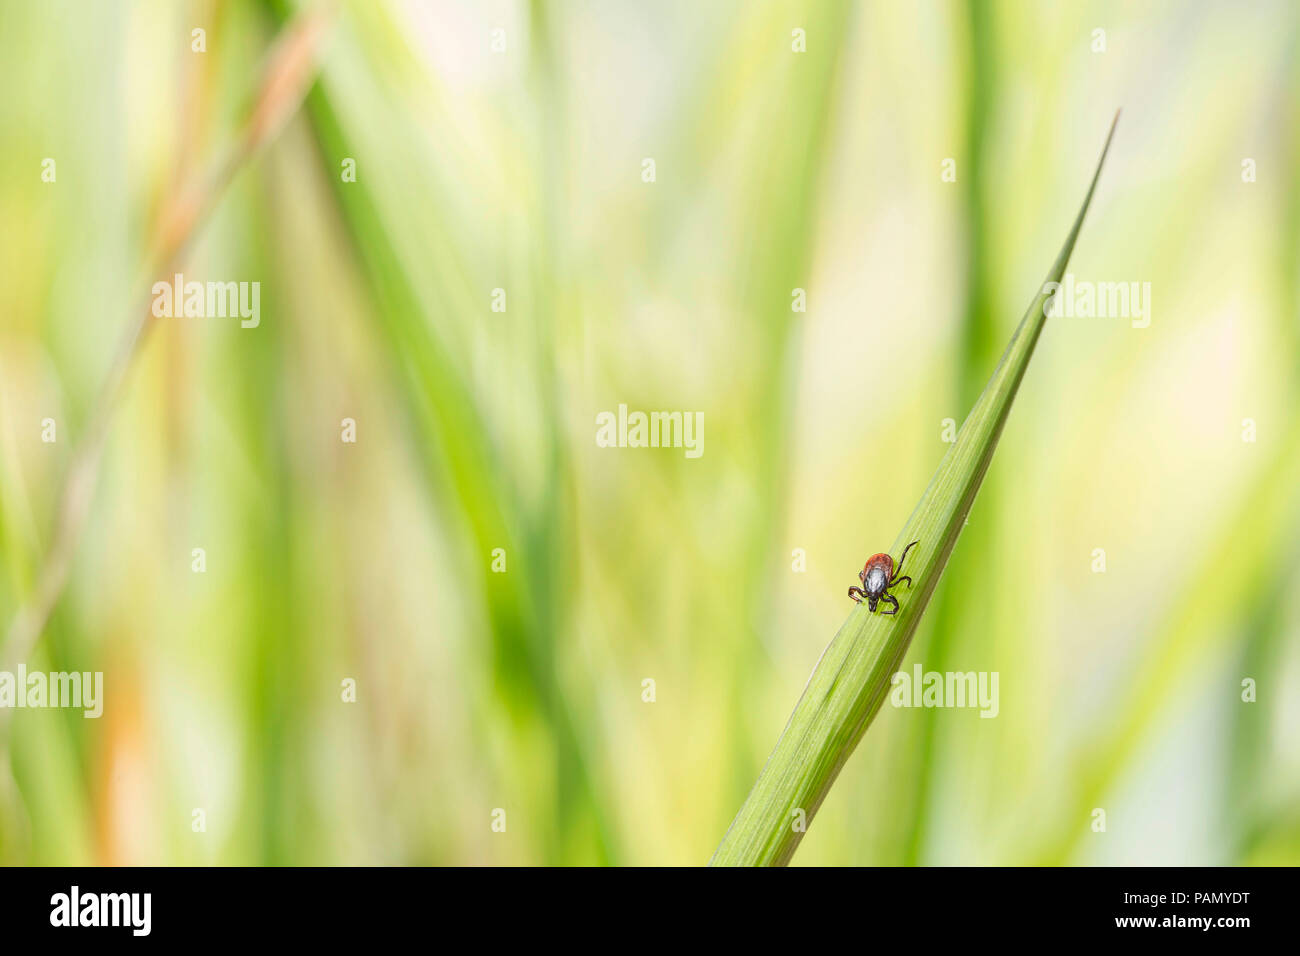 Ricin tique (Ixodes ricinus) sur un brin d'herbe. Allemagne Banque D'Images